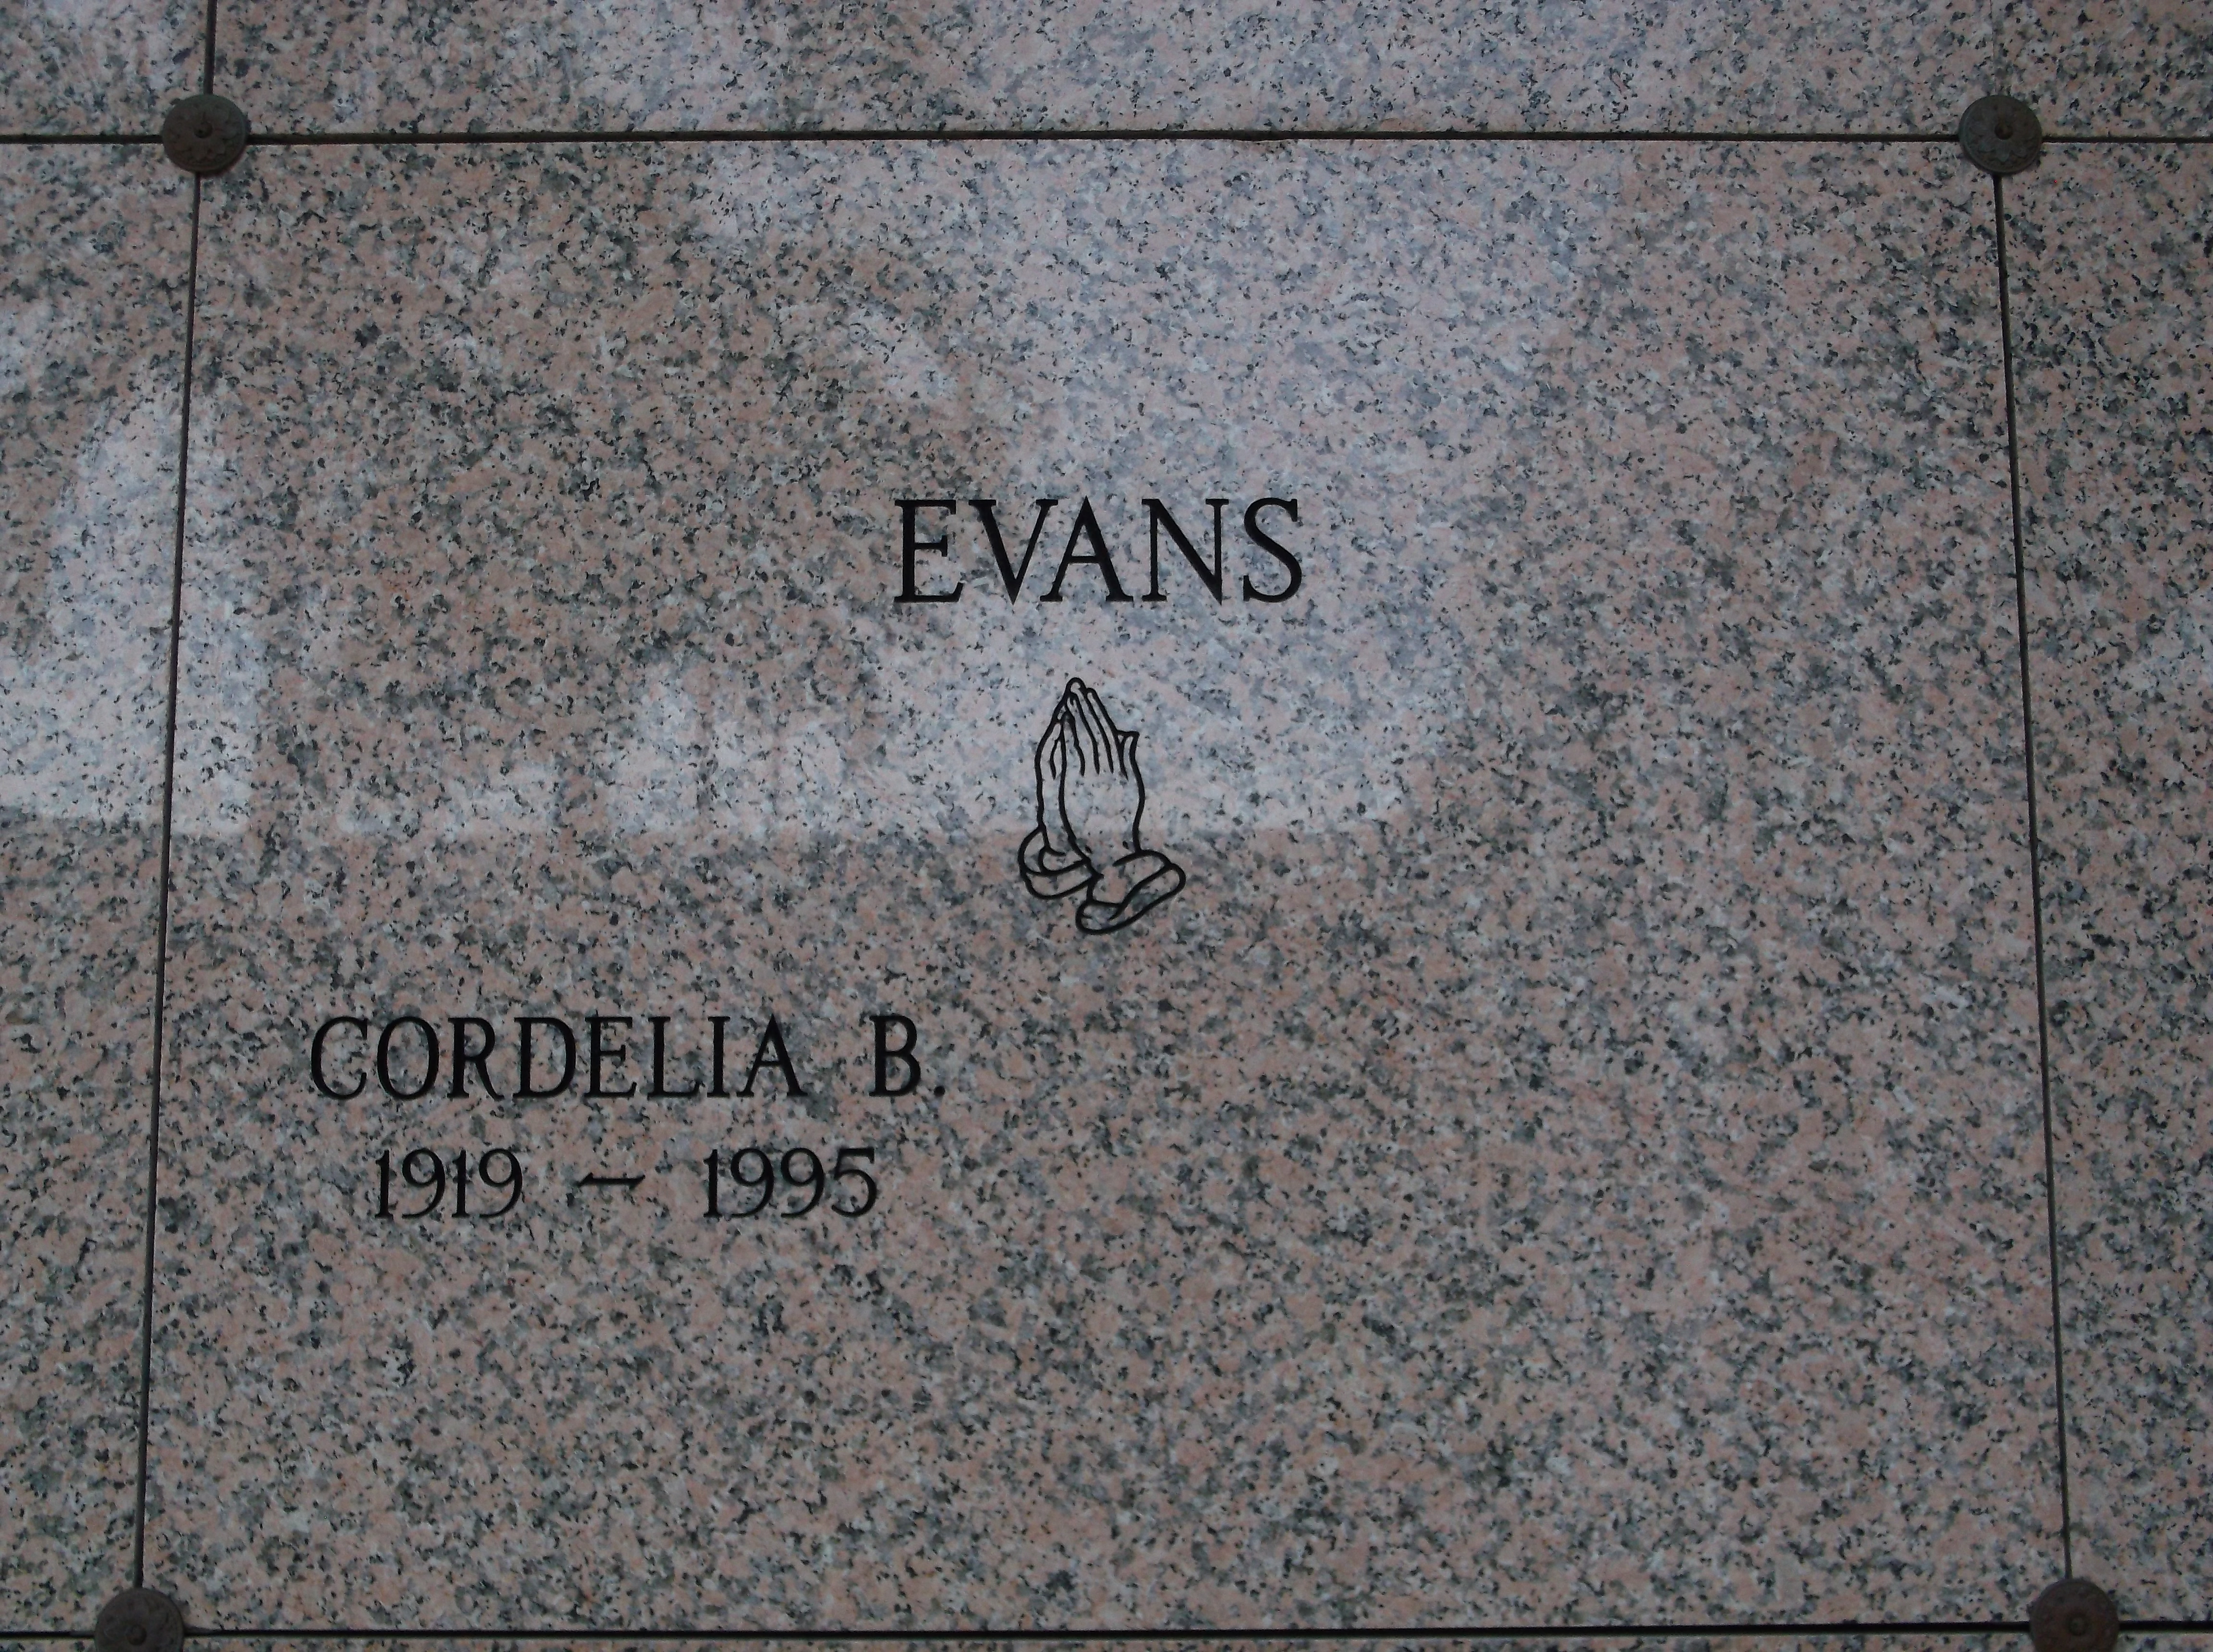 Cordelia B Evans